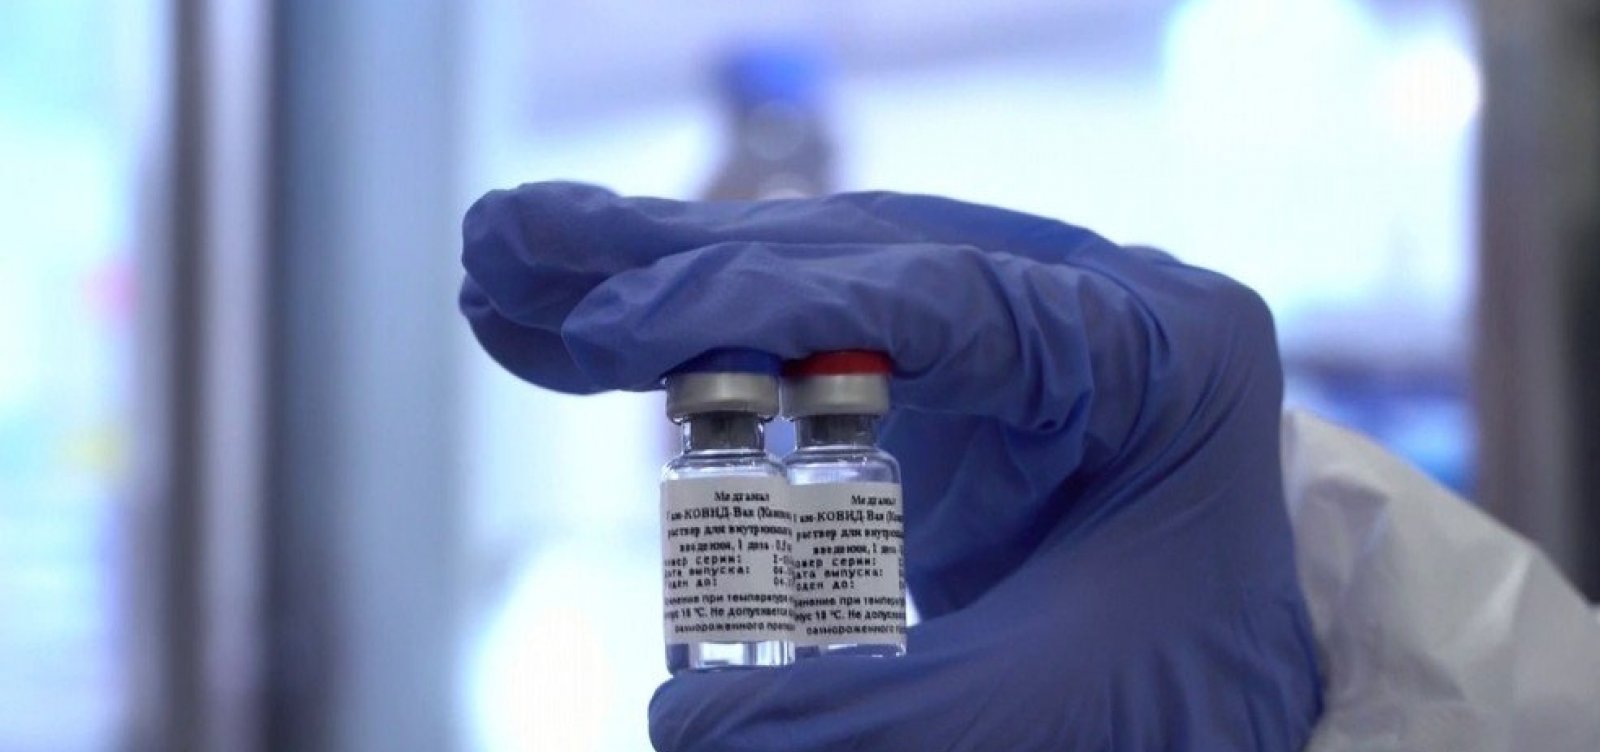 Paraná e Rússia assinam nesta quarta acordo sobre vacina contra coronavírus